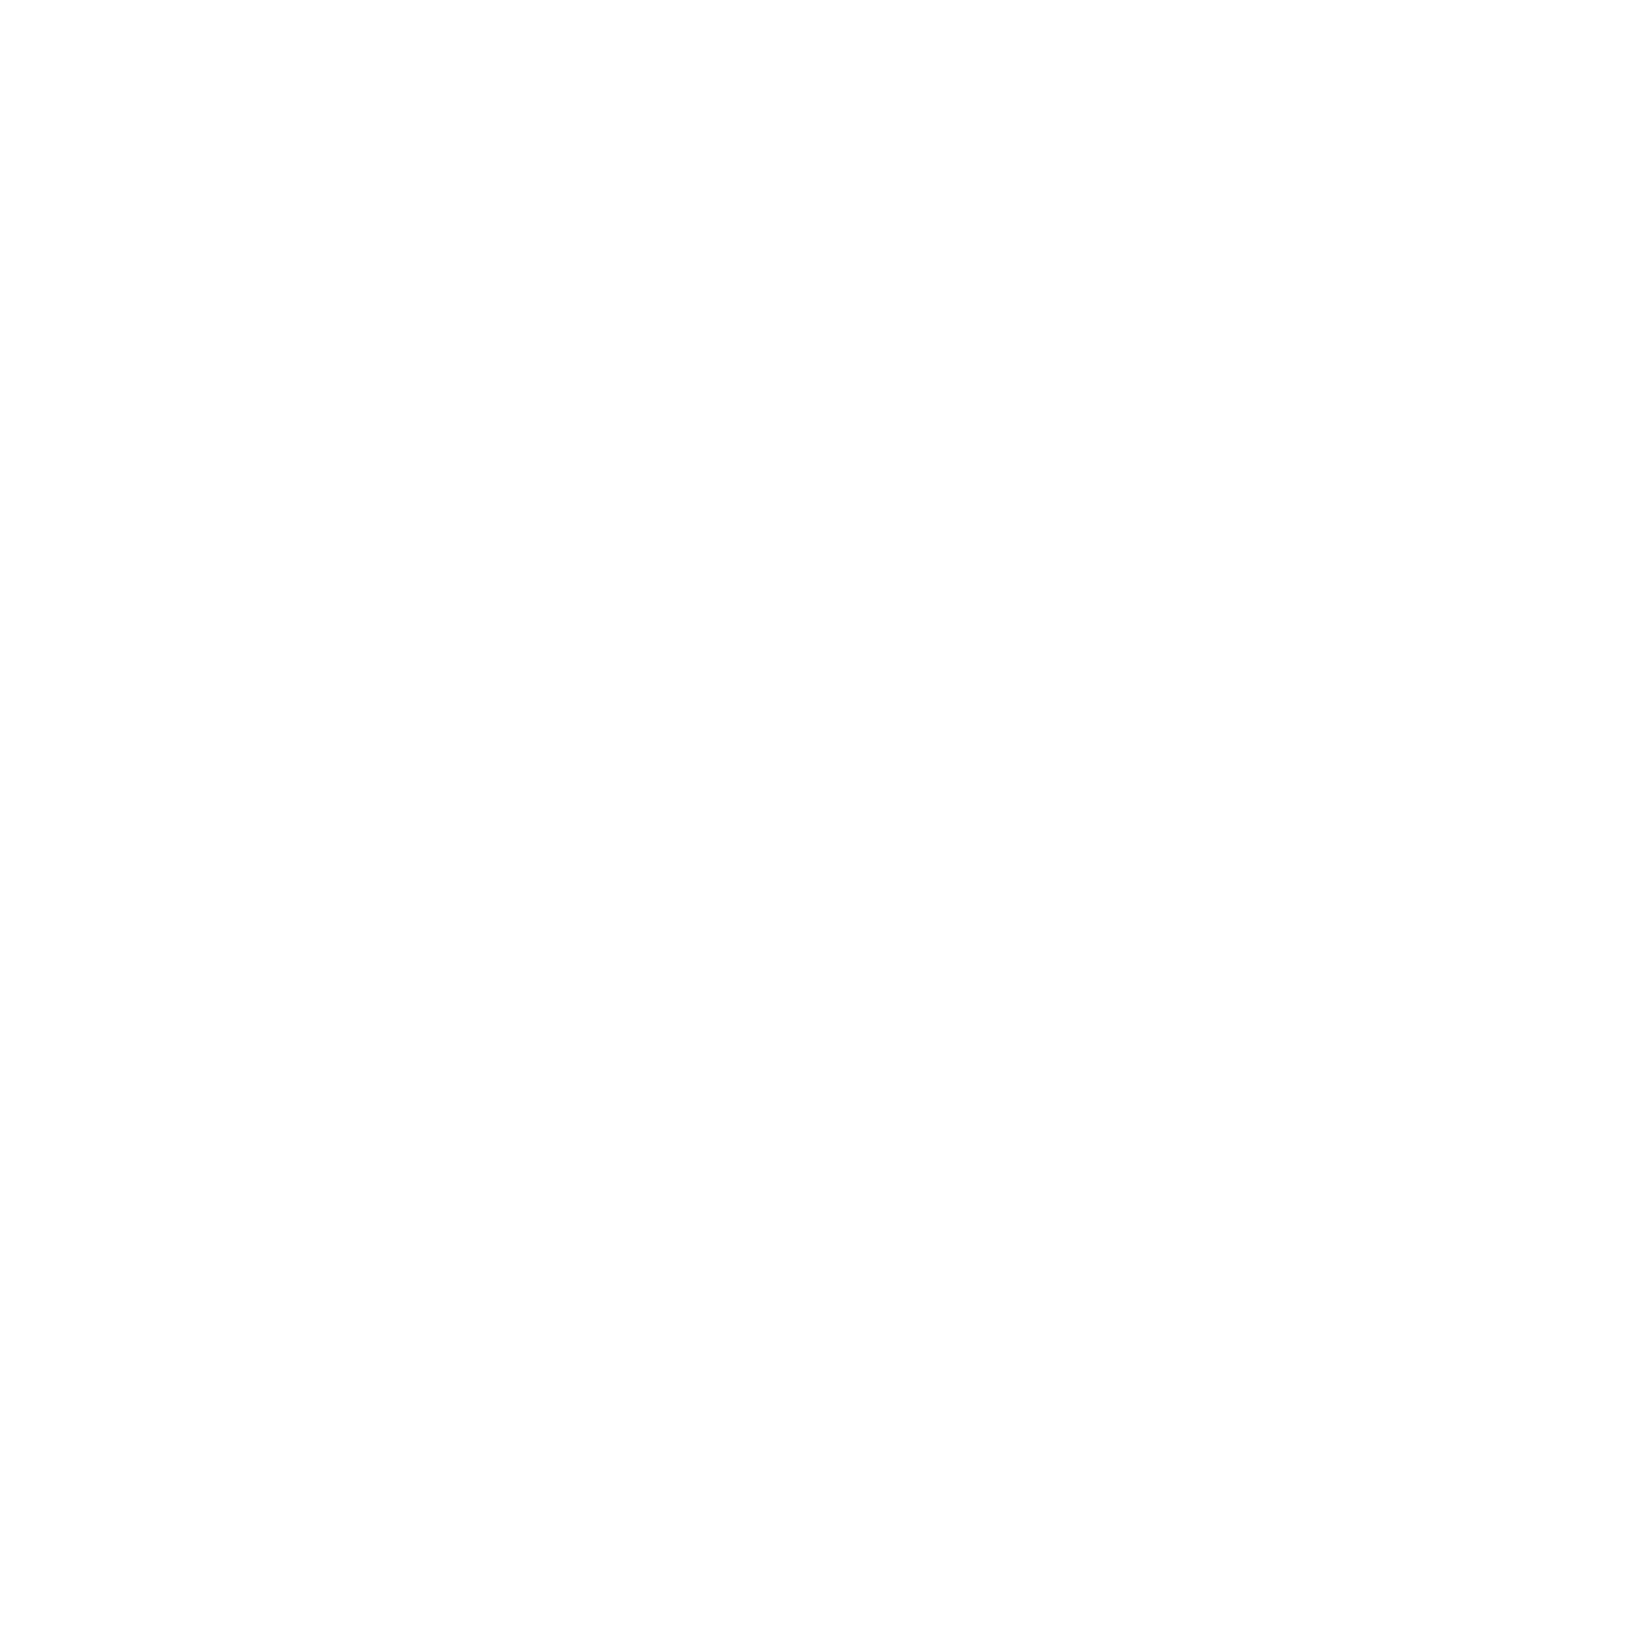 JGS Distributing